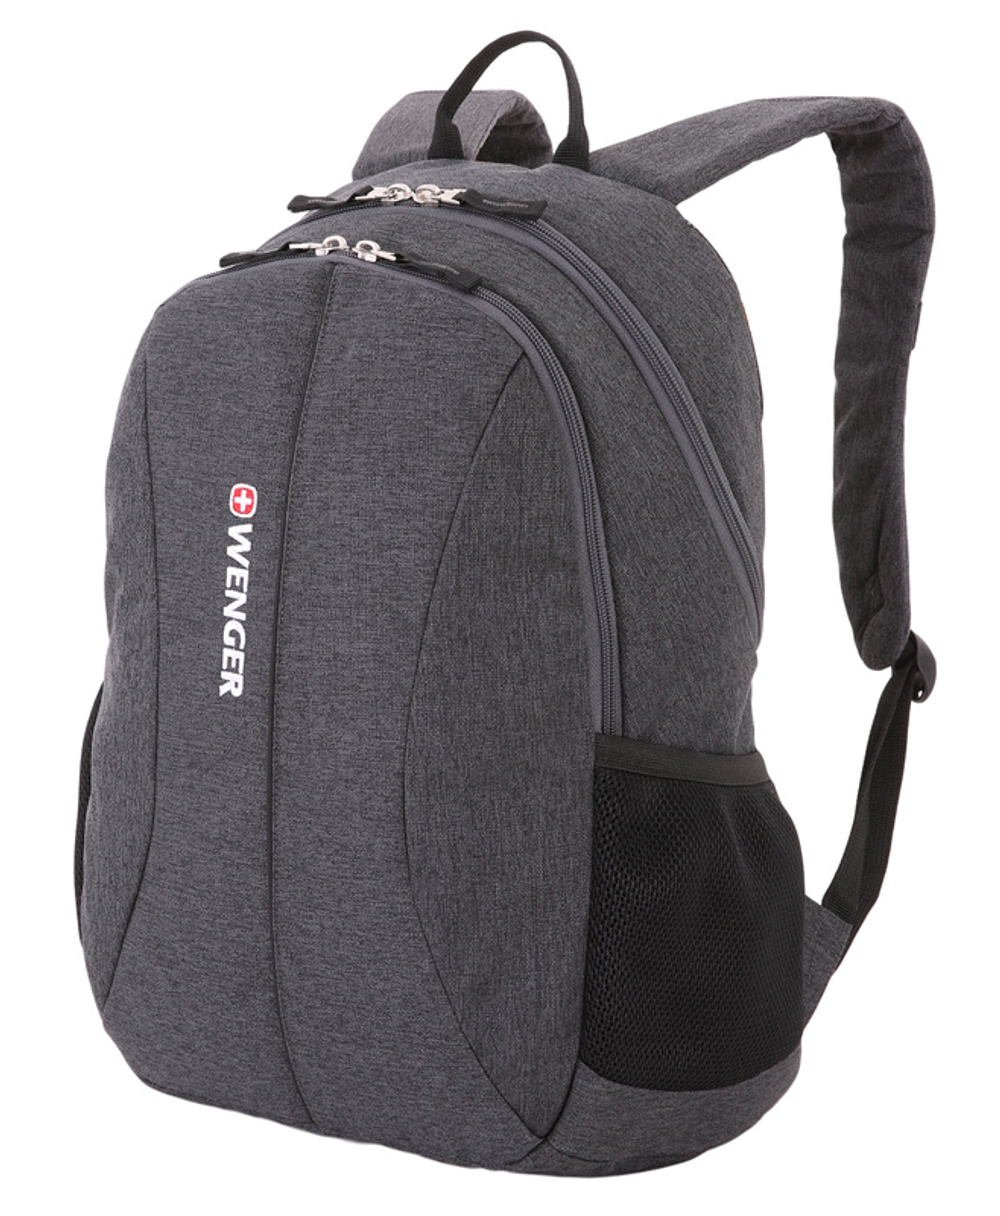 Качественный с гарантией прочный рюкзак серый объёмом 23 л из полиэстера 600D с отделением для ноутбука WENGER 5639424408